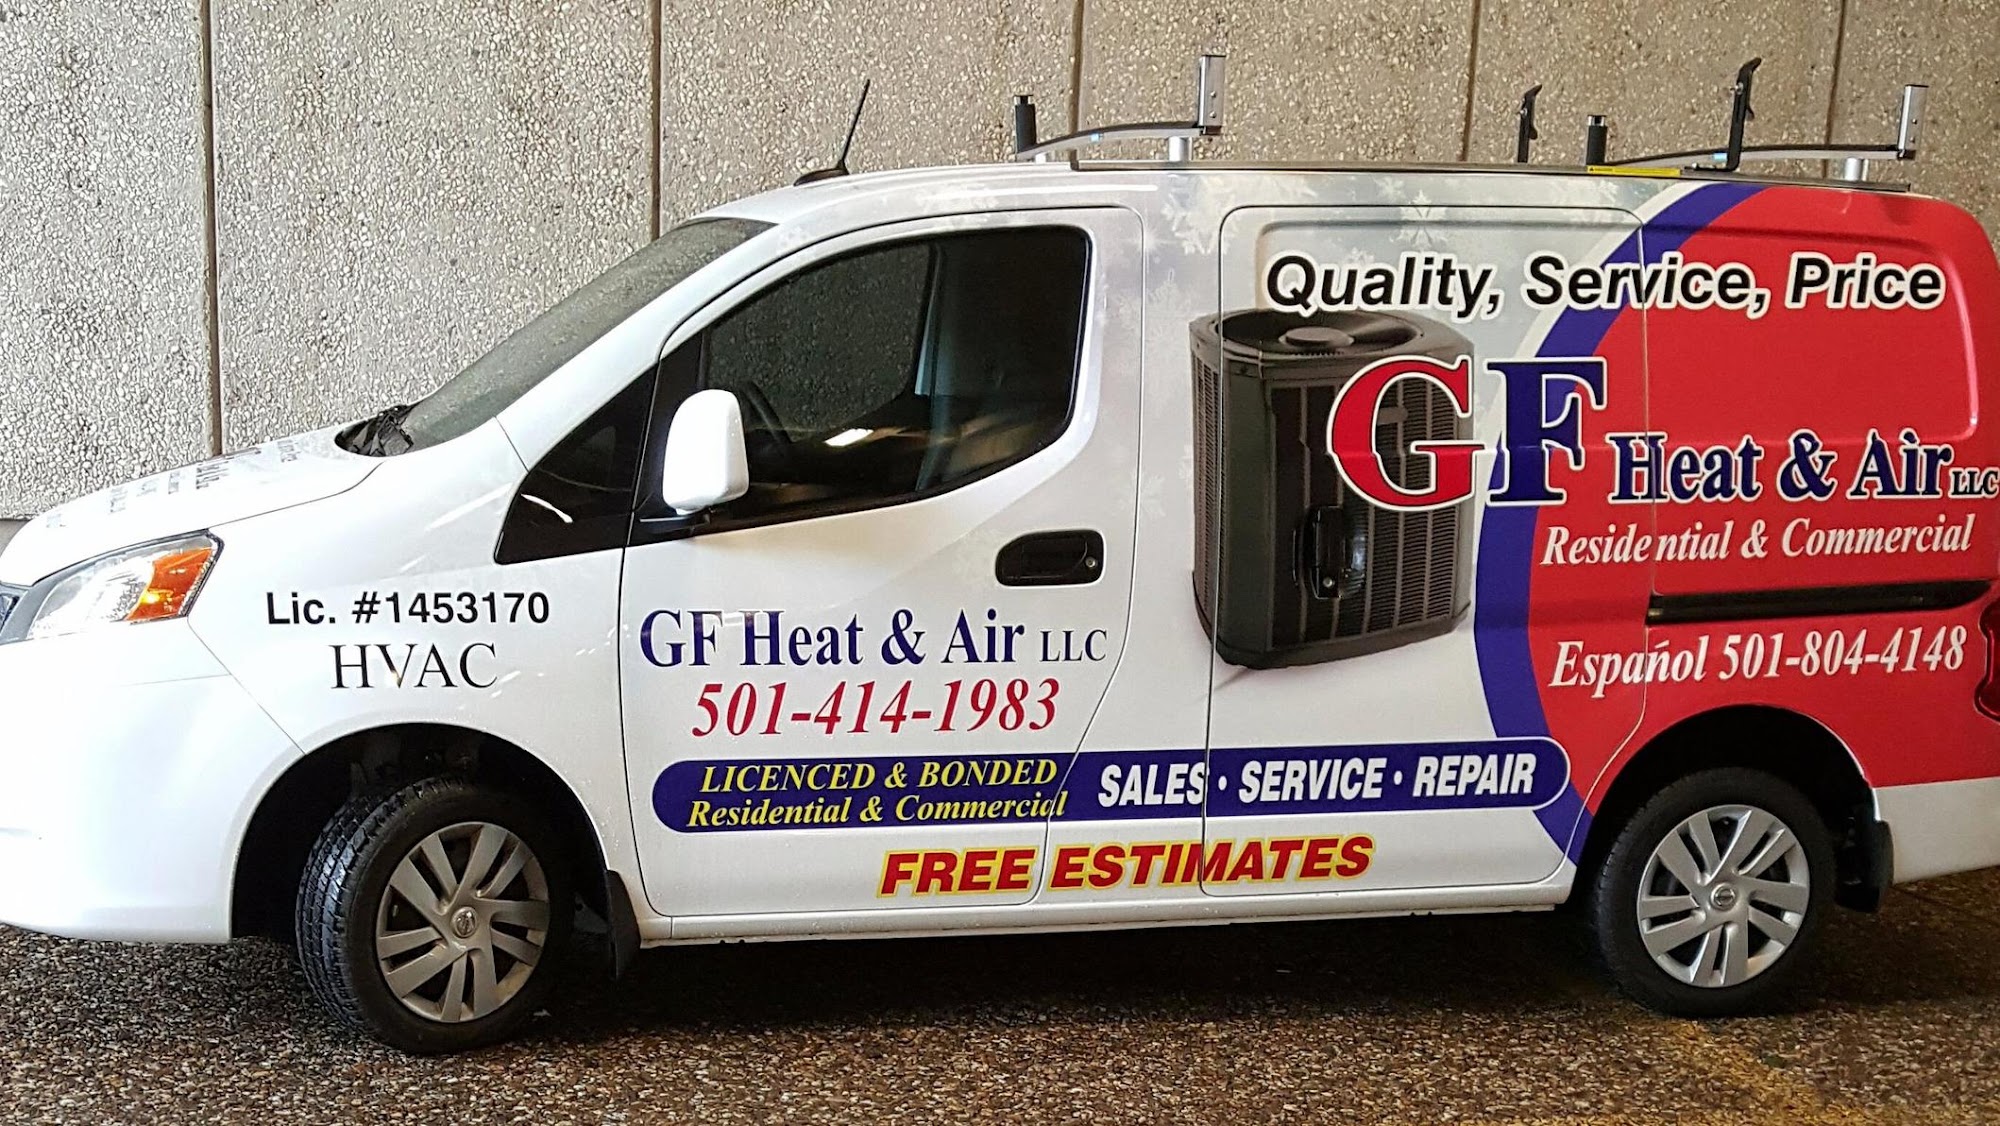 GF Heat & Air, LLC